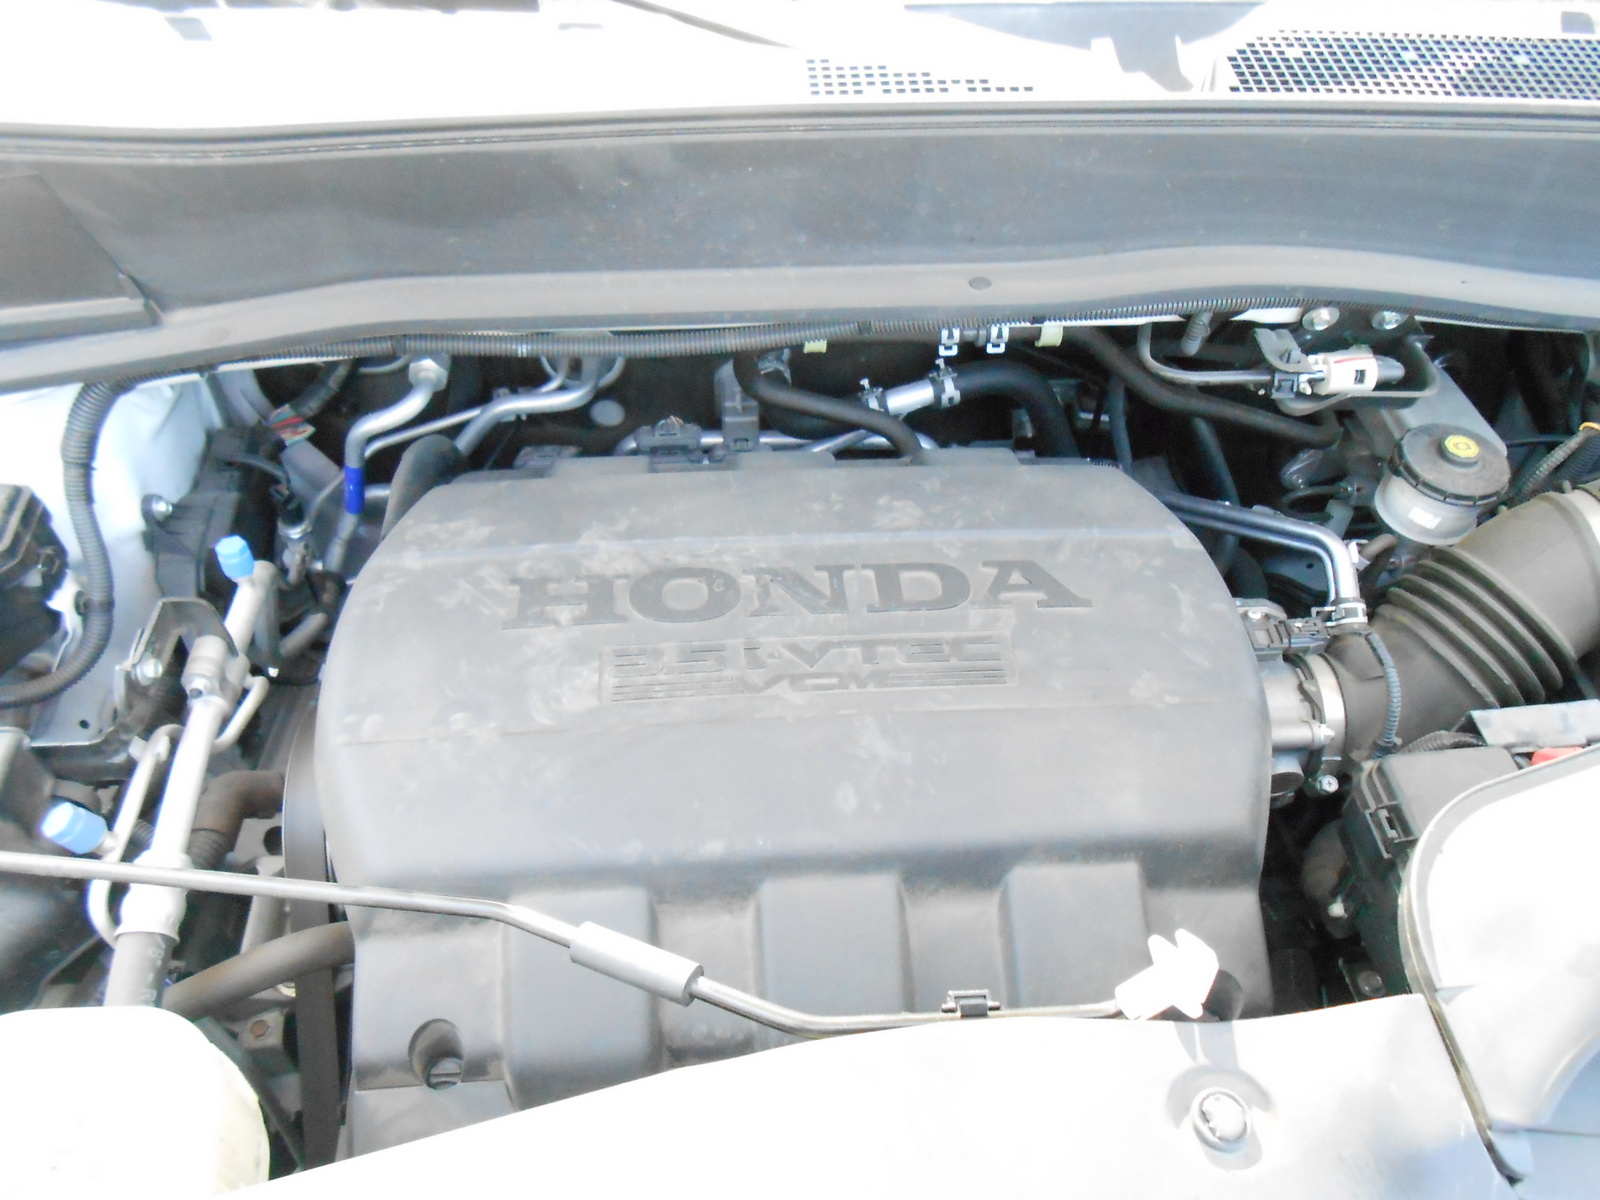 2012 Honda pilot variable cylinder management problems